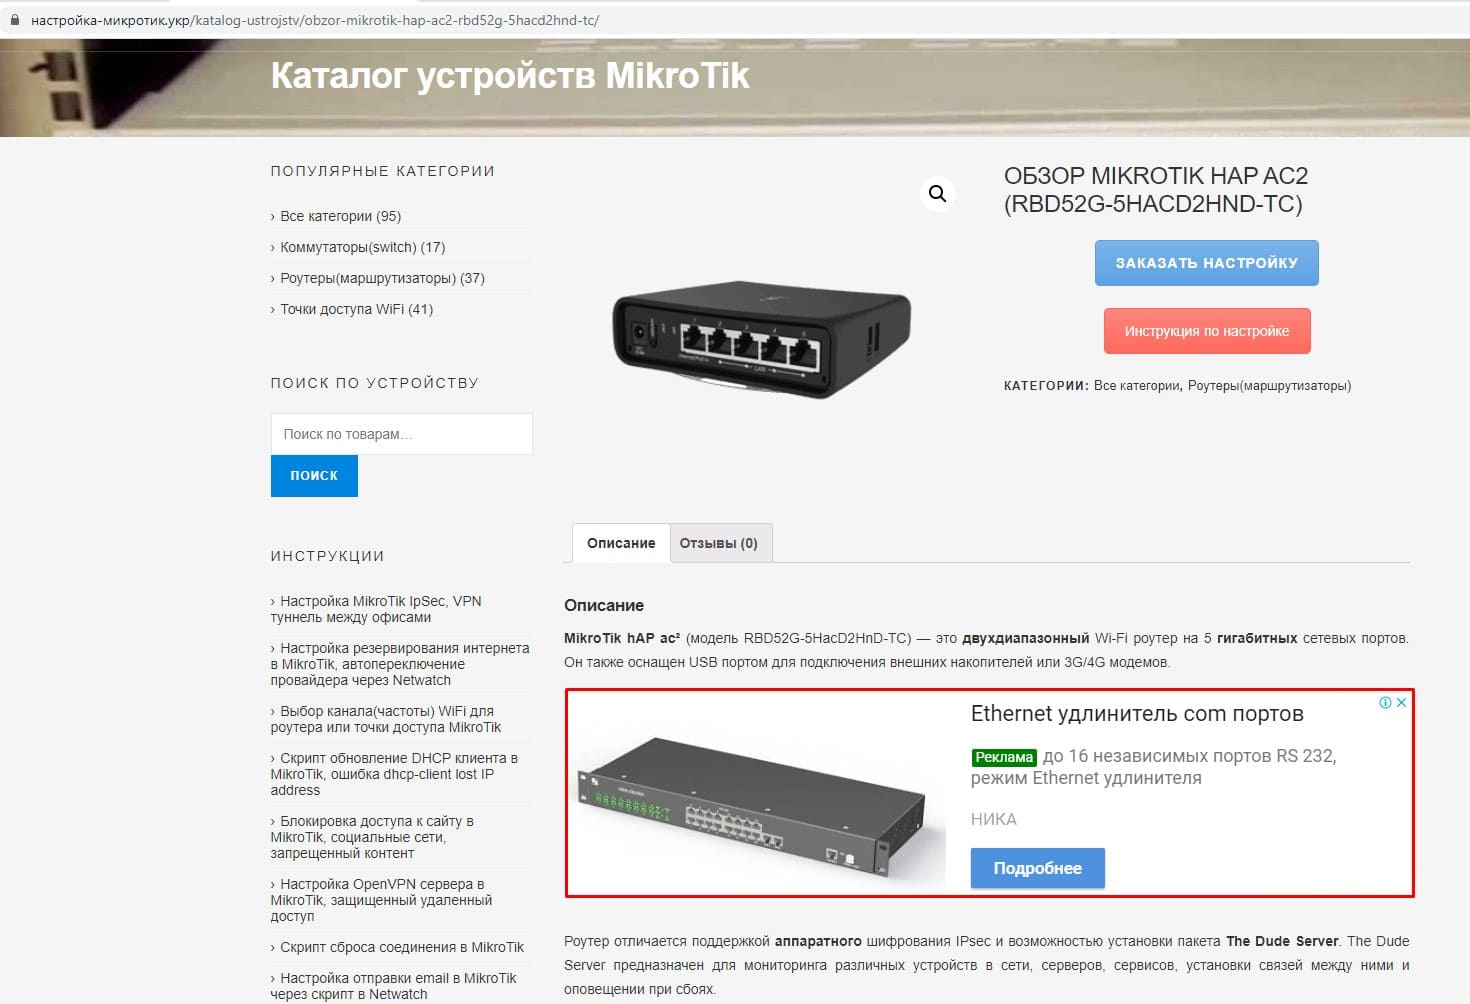 Реклама на сайте настройка-микротик.укр, баннер в тексте описании инструкции